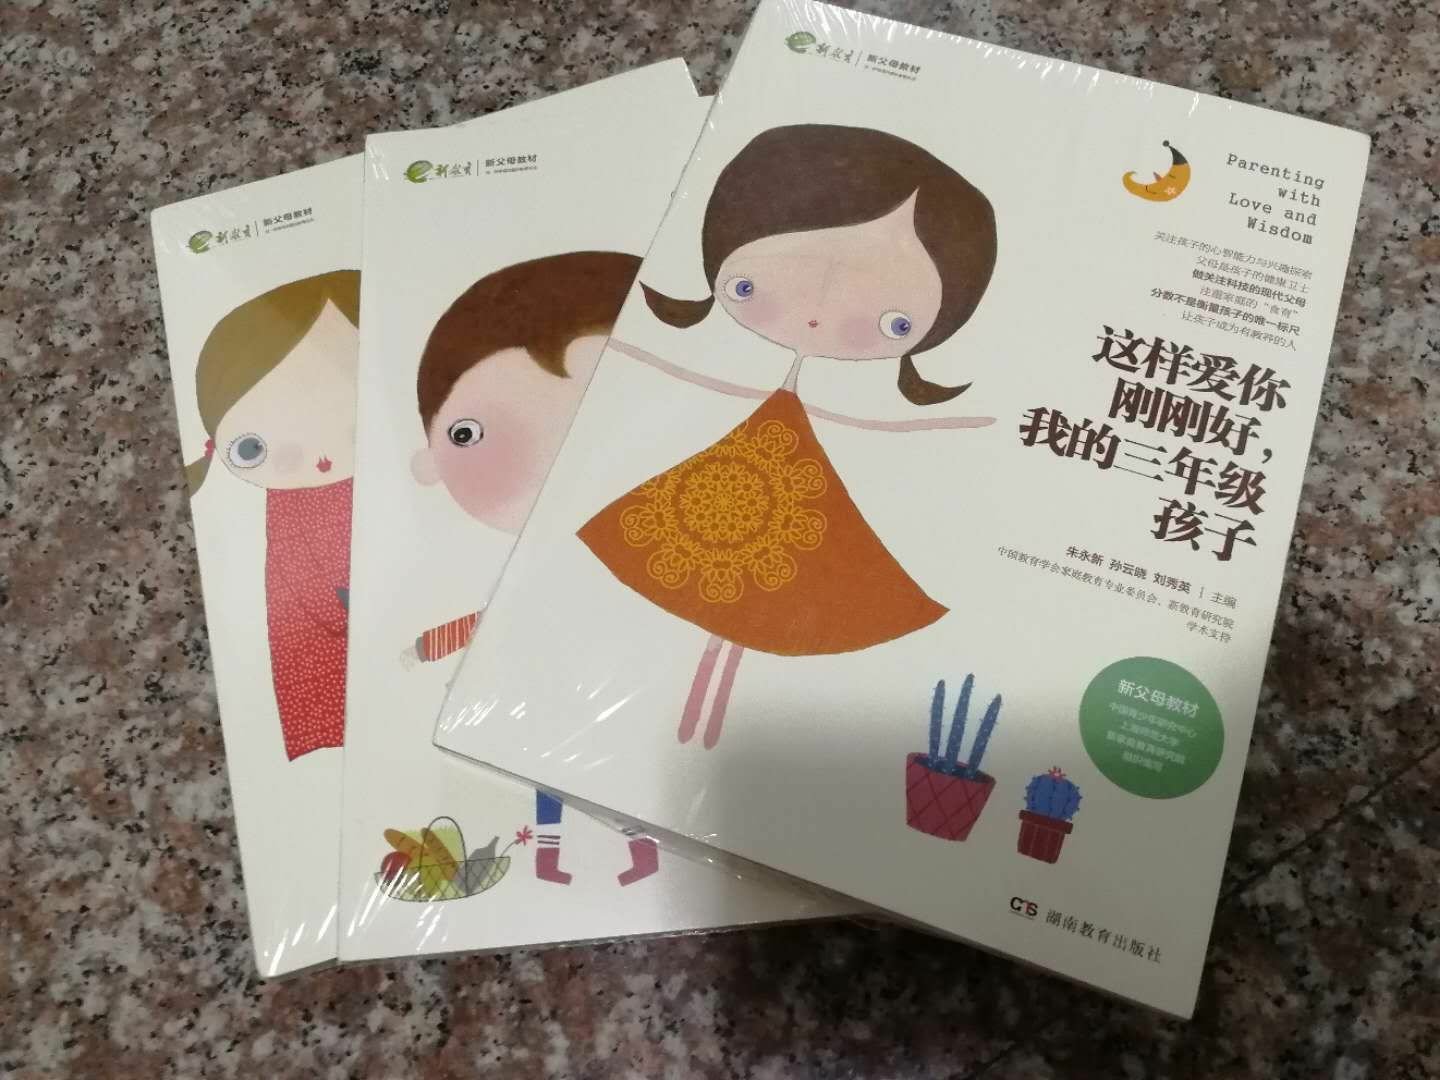 浙江的县城居然不能选择指定时间收货，有点不爽。但书真的是好书，每个家长都应该买来读。